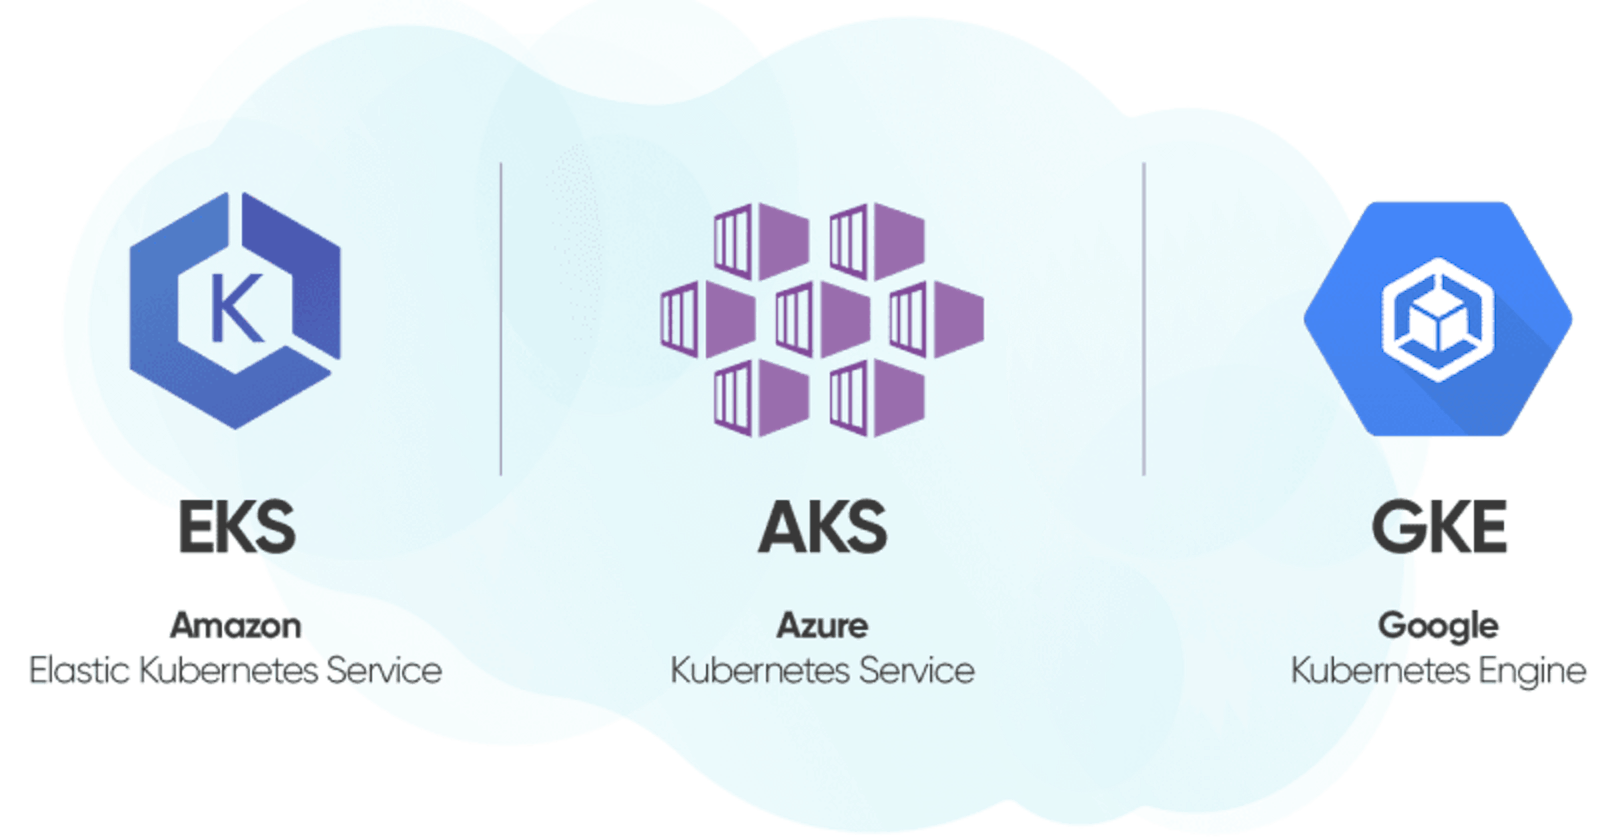 Comparing Managed Kubernetes Services: EKS vs. AKS vs. GKE